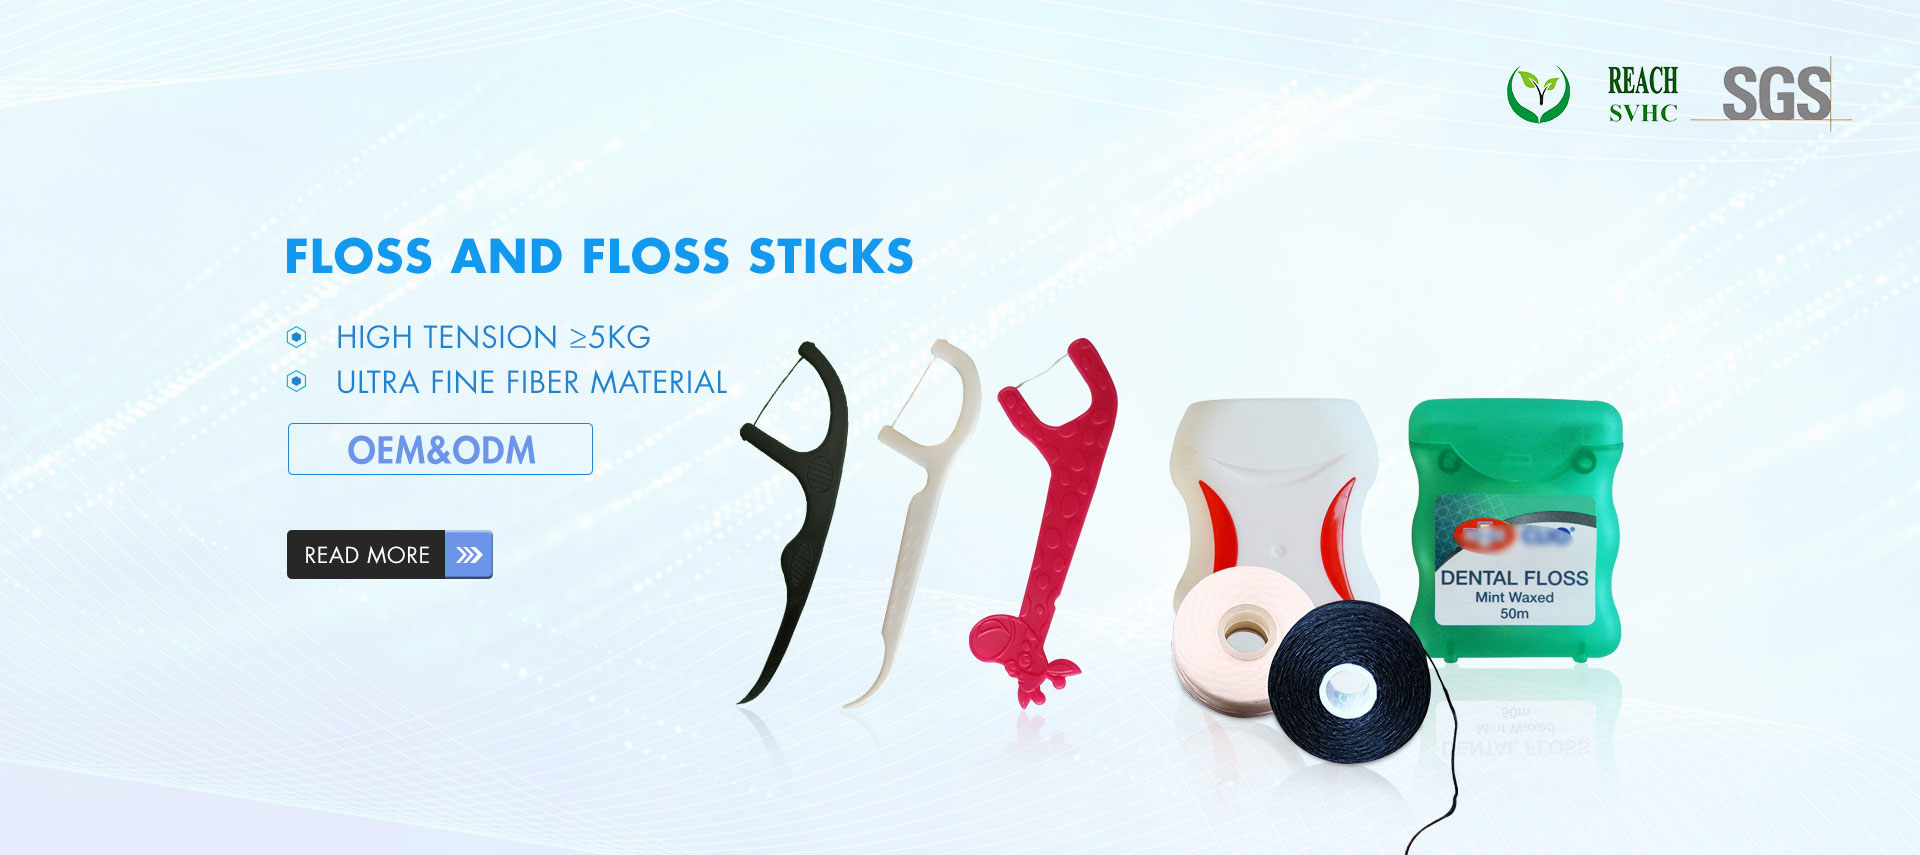 Floss and floss sticks